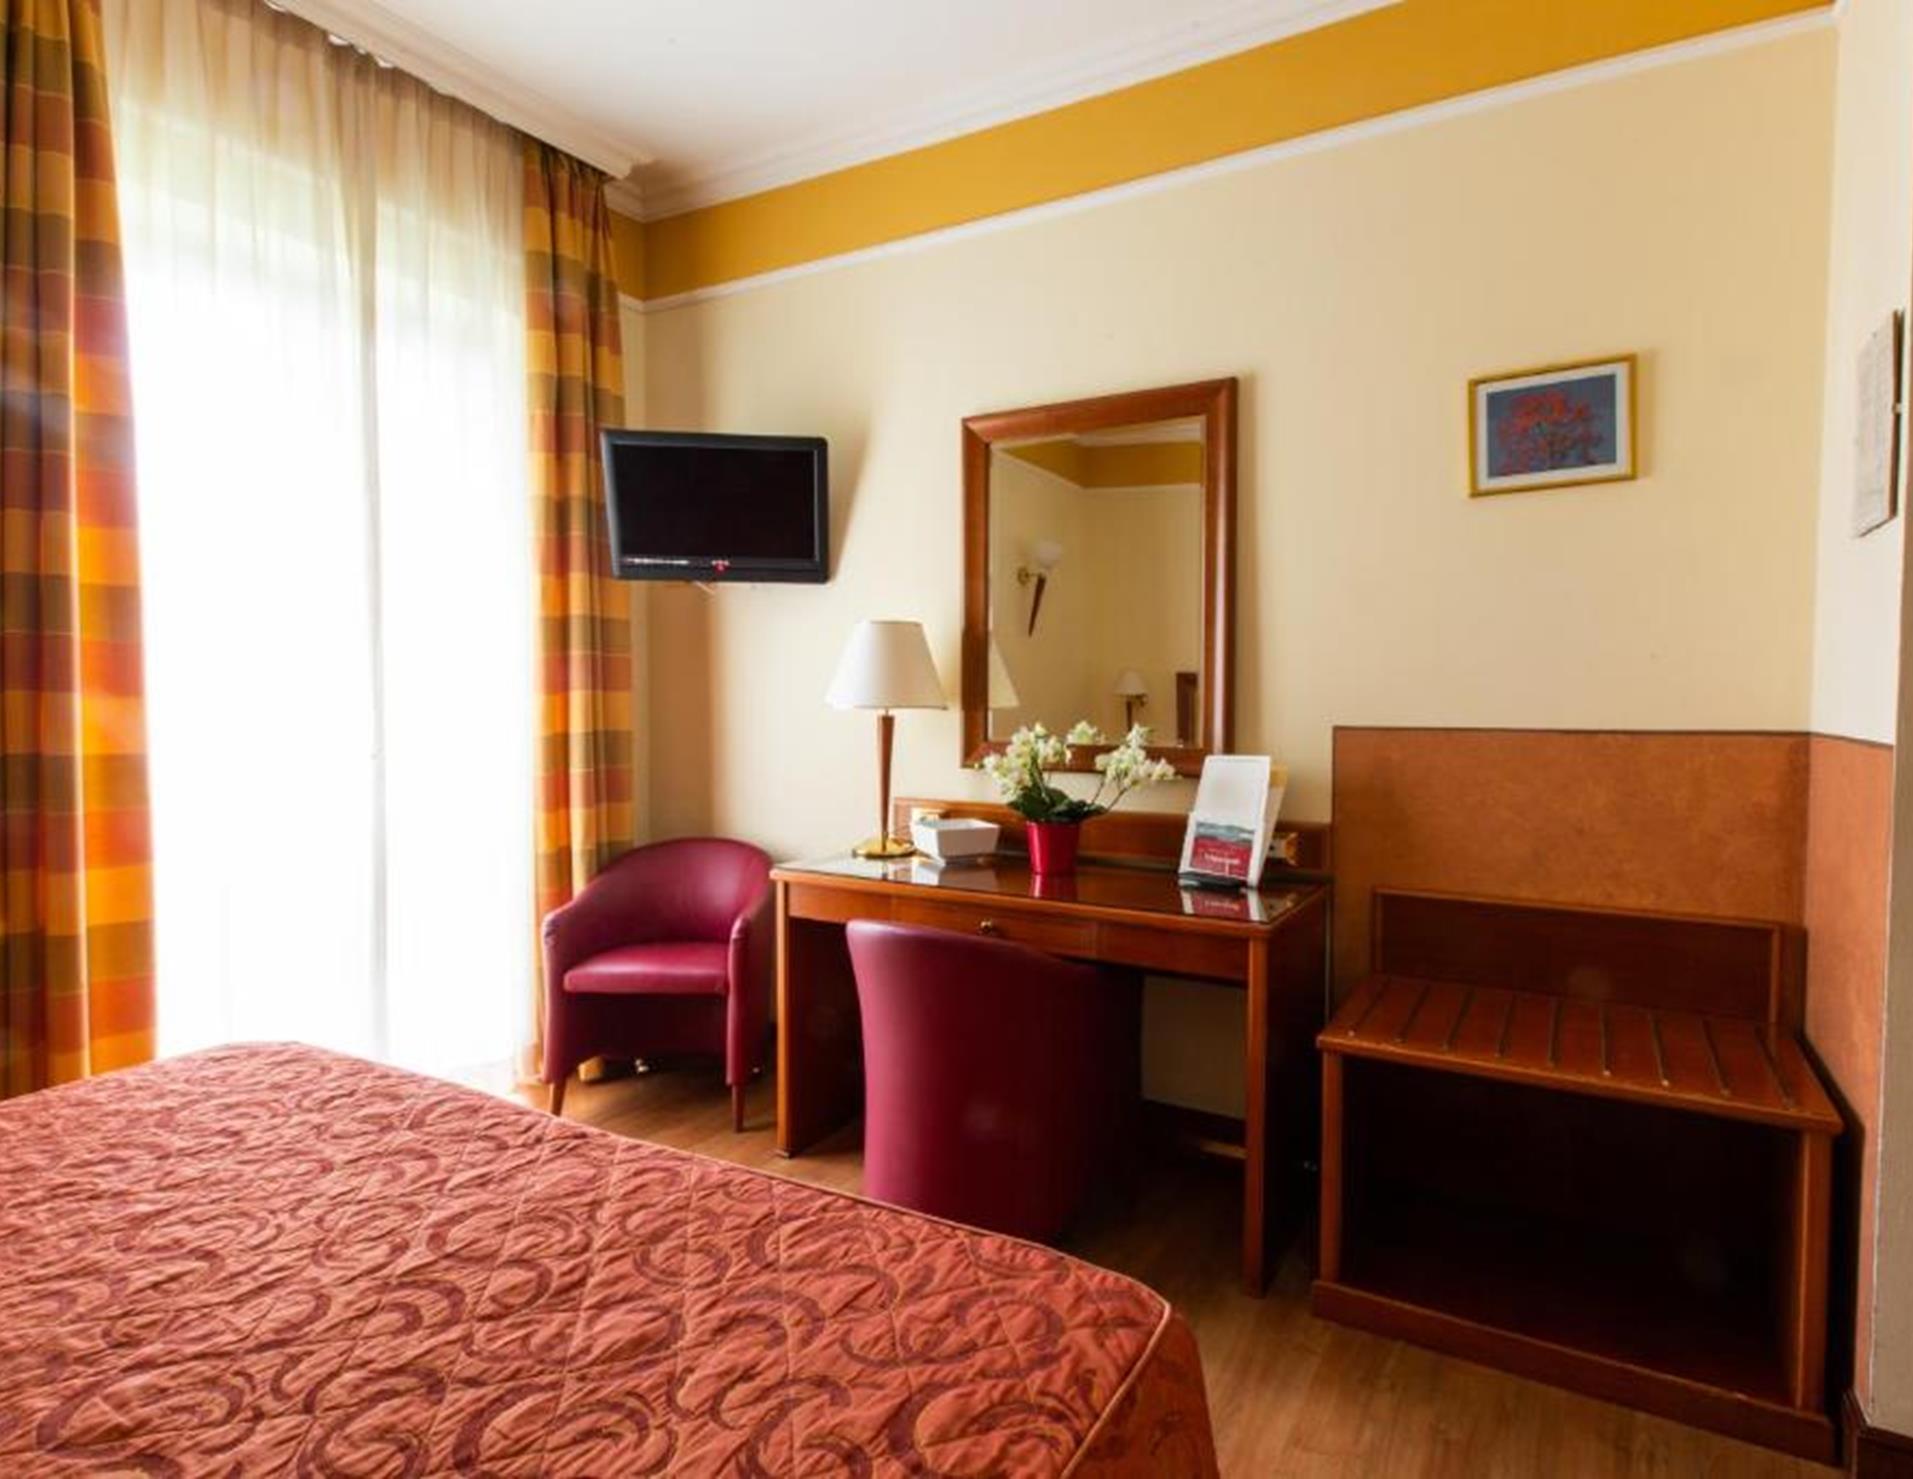 Hotel Il Chiostro - Room 8